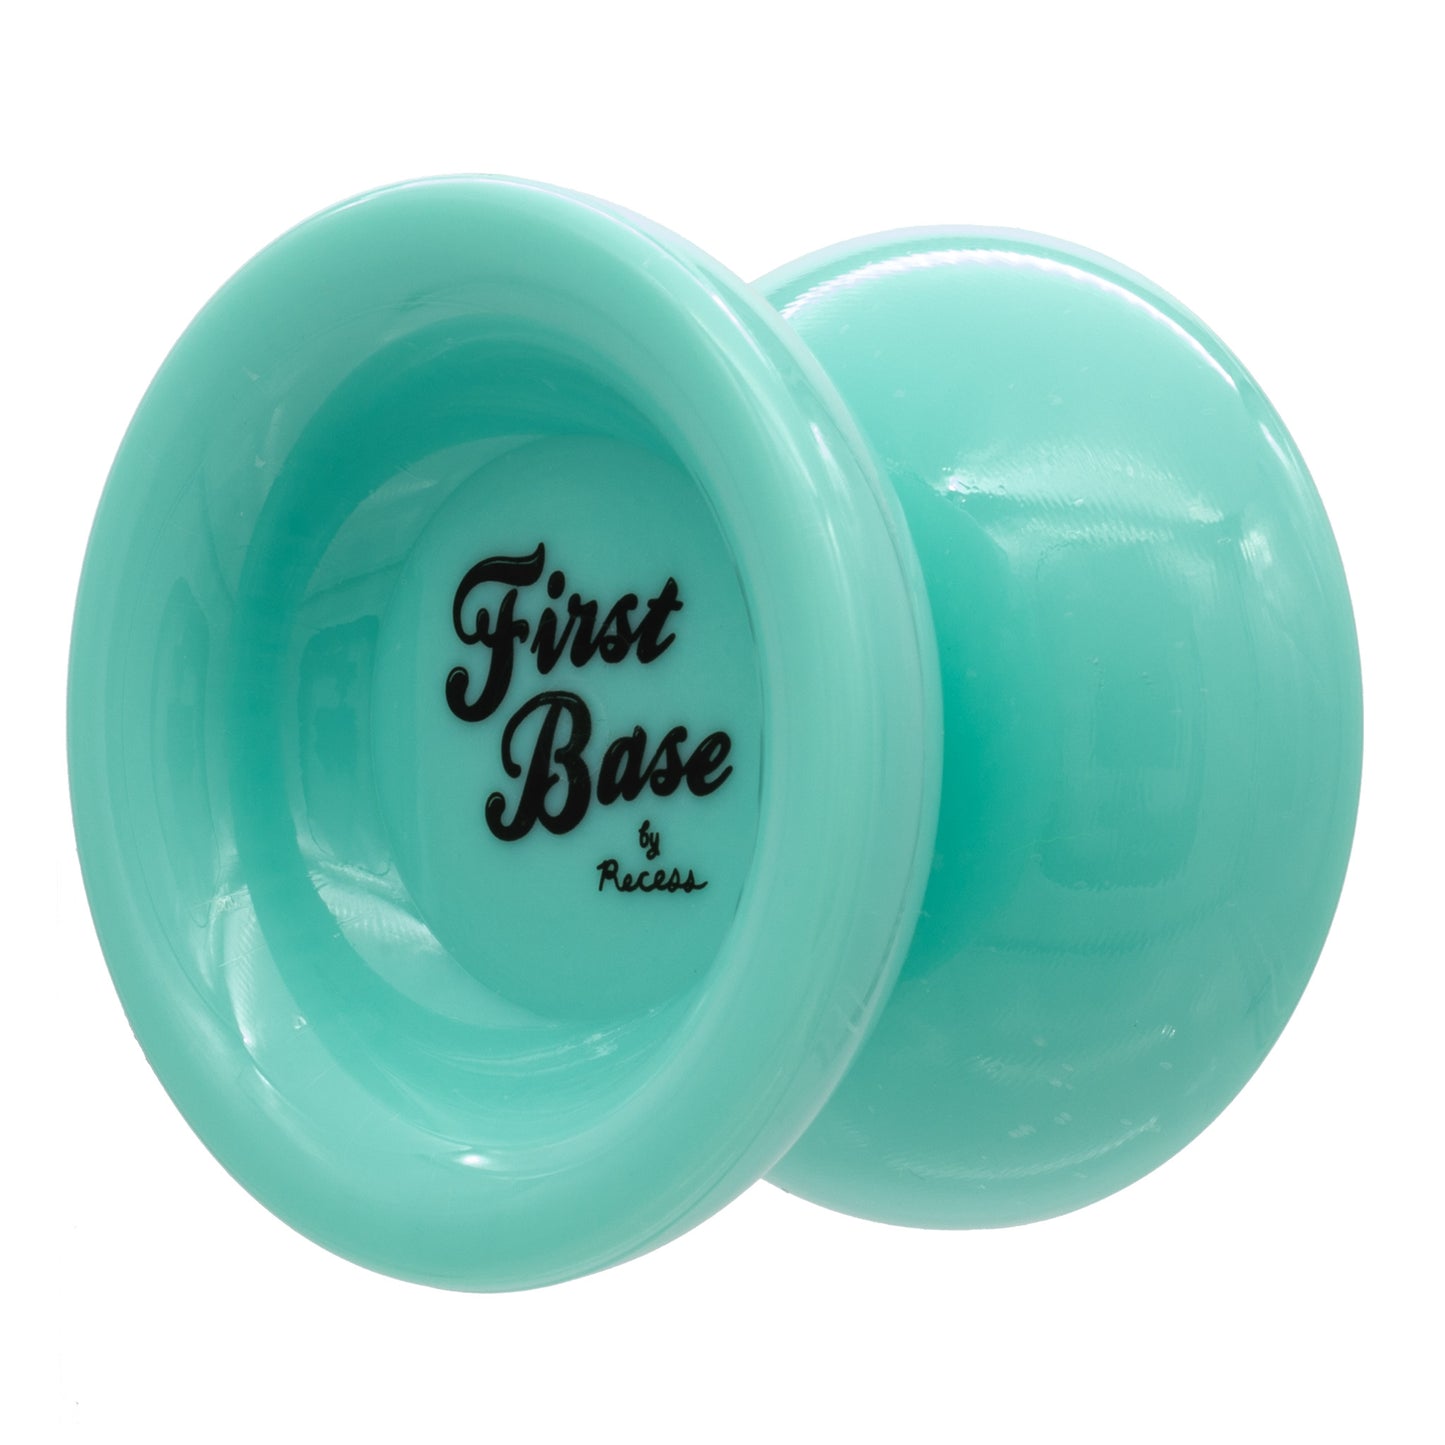 Recess First Base Yo-Yo